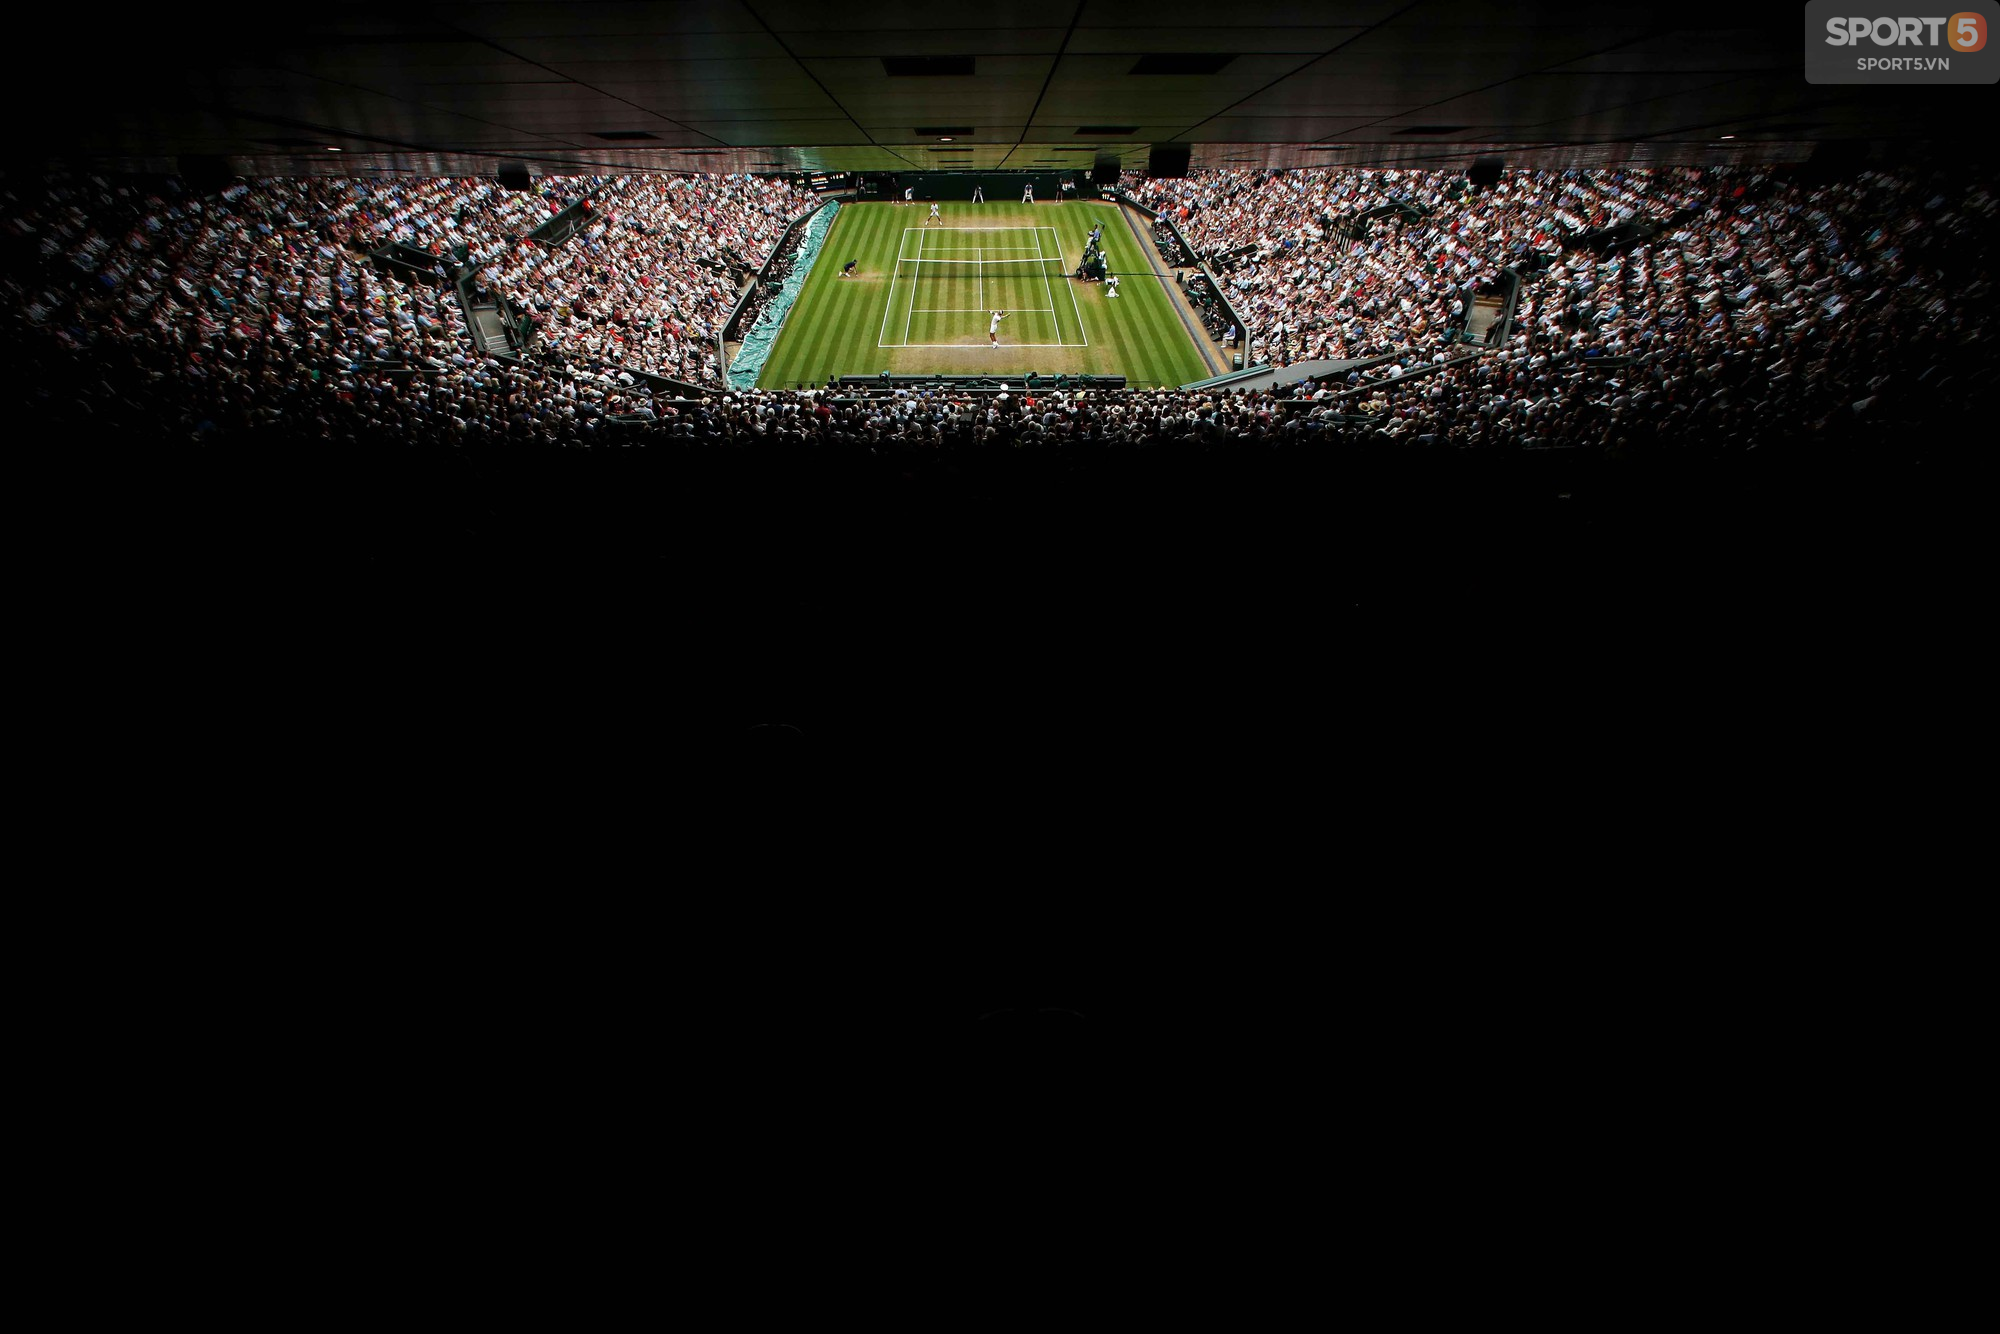 Quật ngã Nadal sau 5 set căng hơn dây đàn, Djokovic vào chung kết Wimbledon - Ảnh 2.